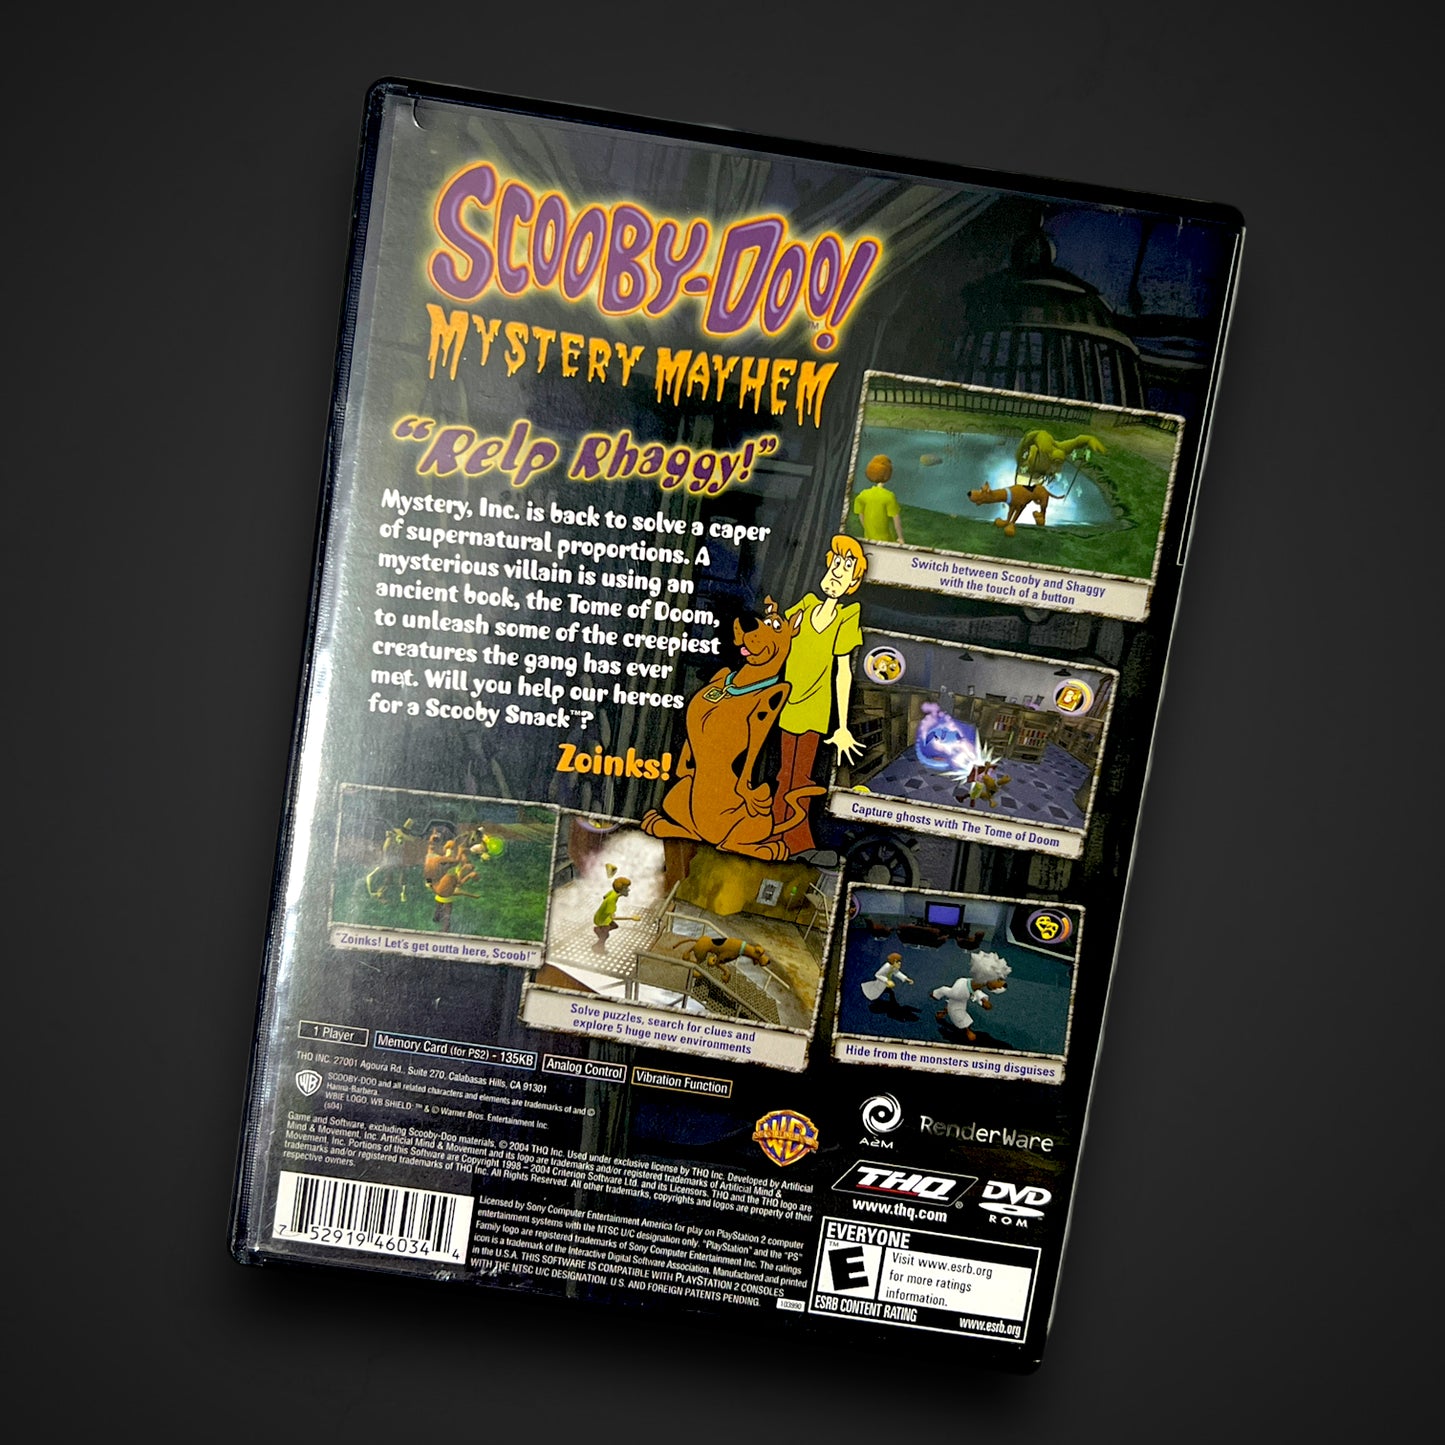 Scooby-Doo! Mystery Mayhem (Sony PlayStation 2, 2004)